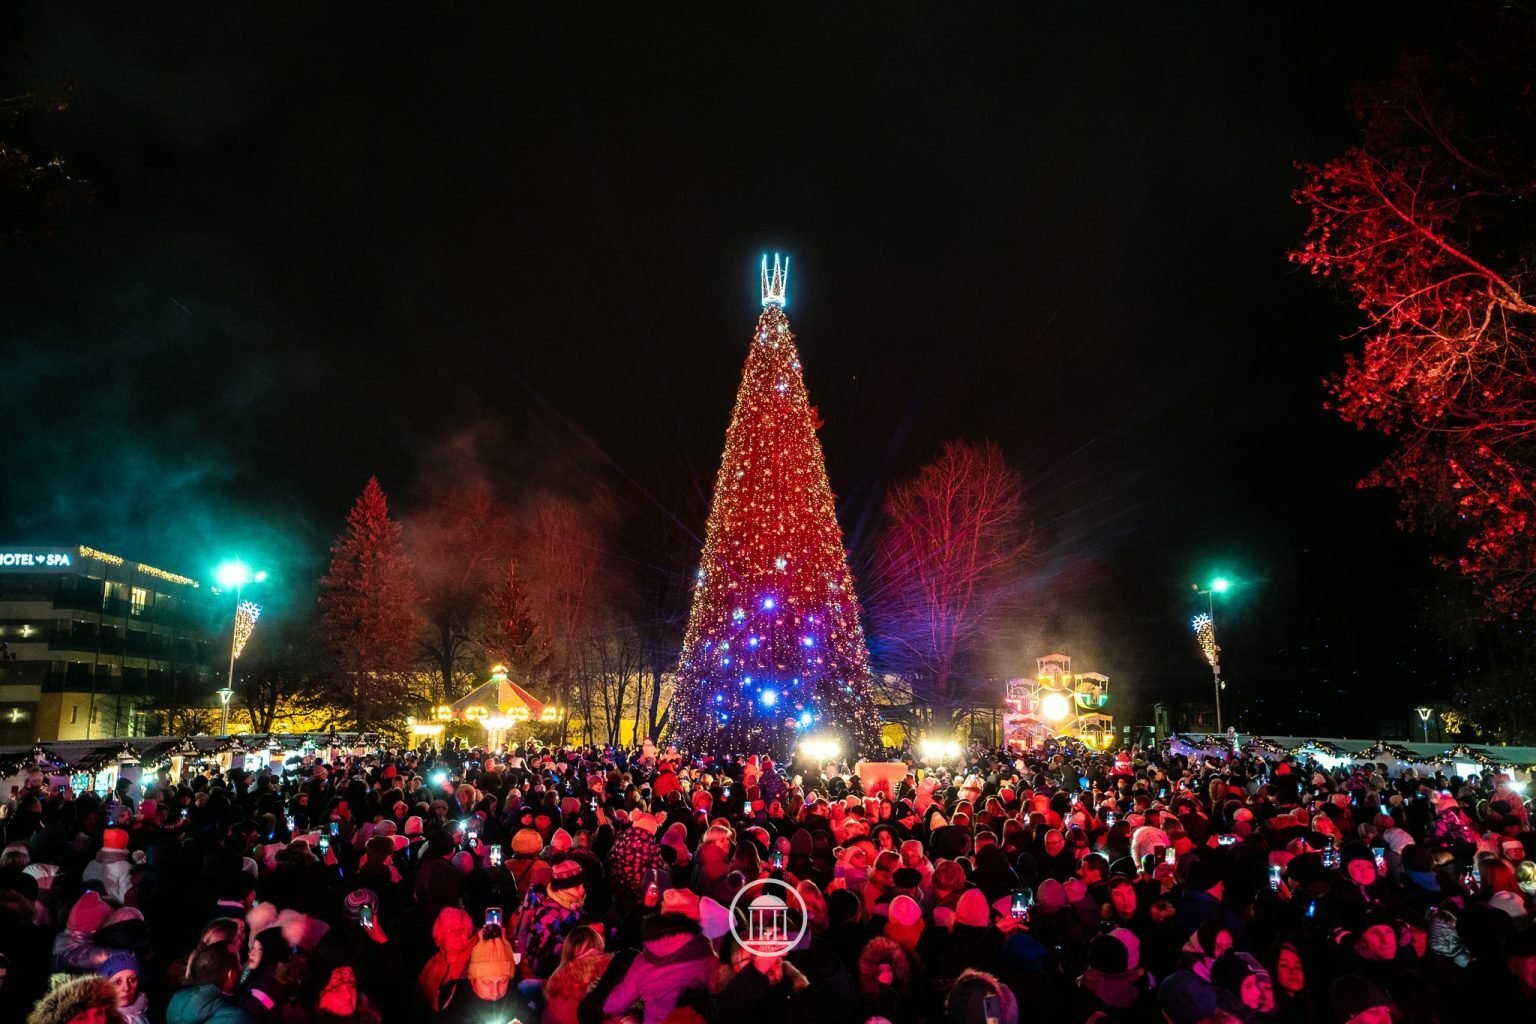 Забастовка в столице, Рождественская елка в Друскининкай, мероприятие «Мой город – Висагинас» и другие новости